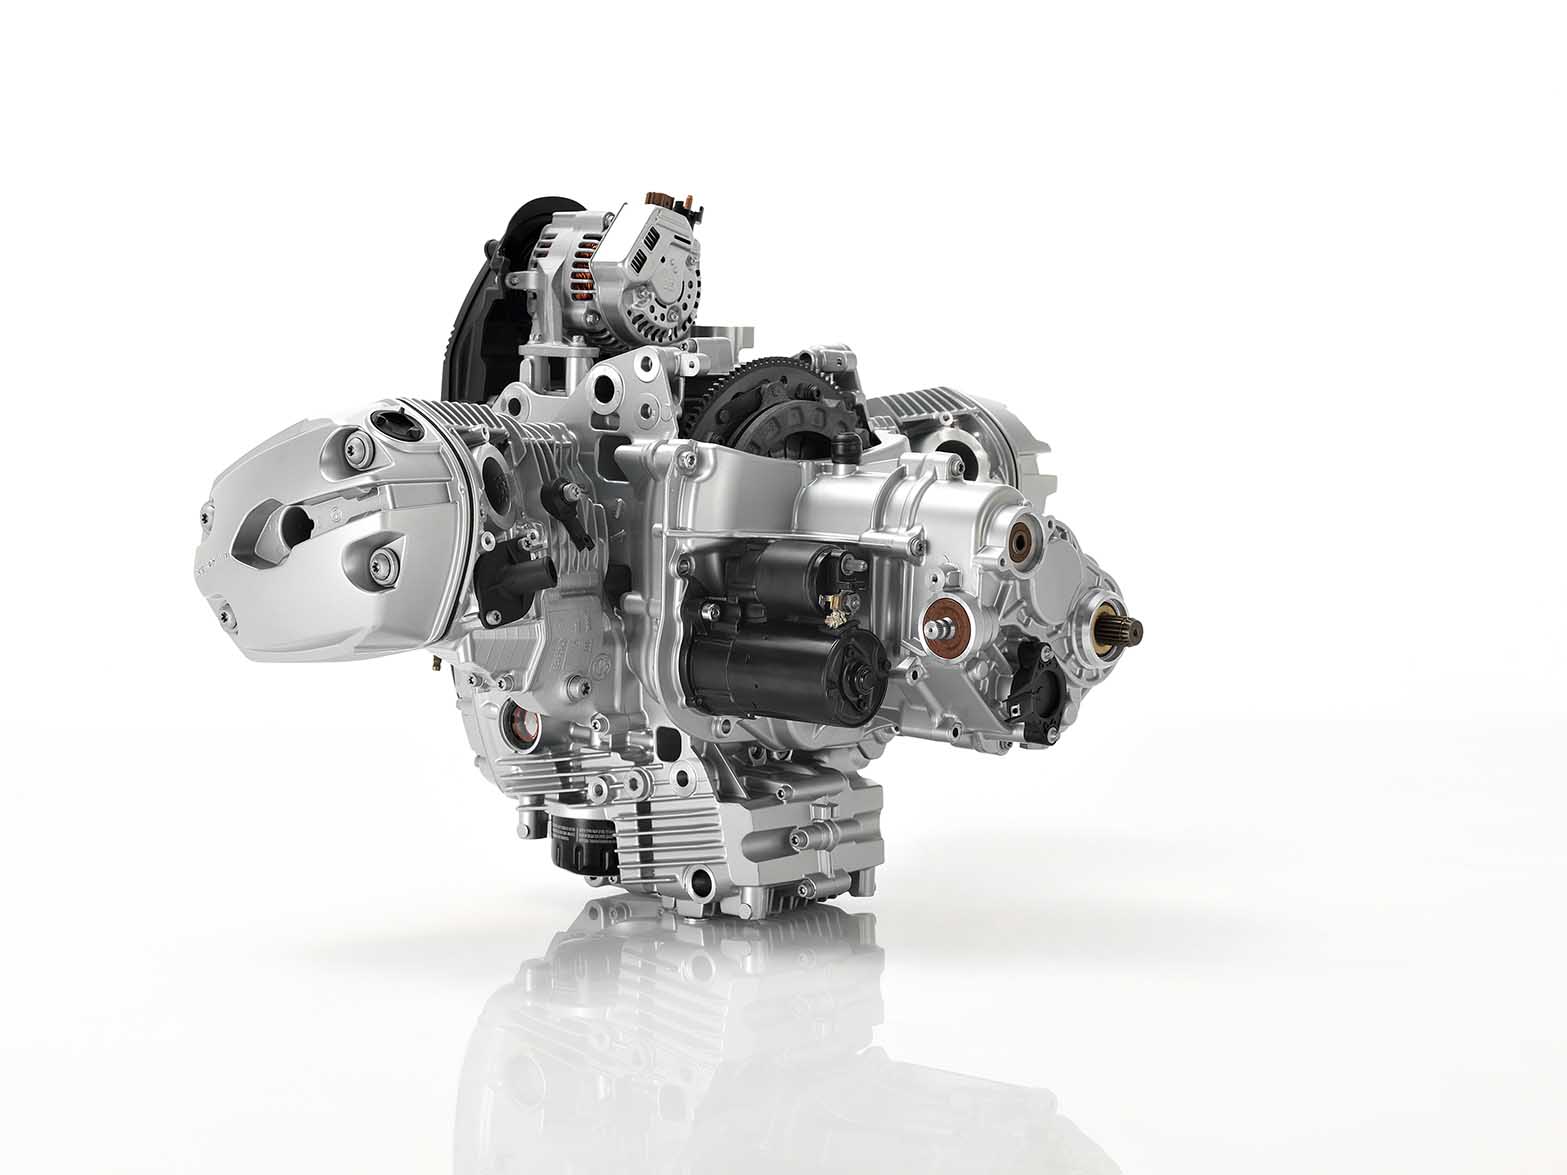 2013-BMW-R1200GS-engine.jpg